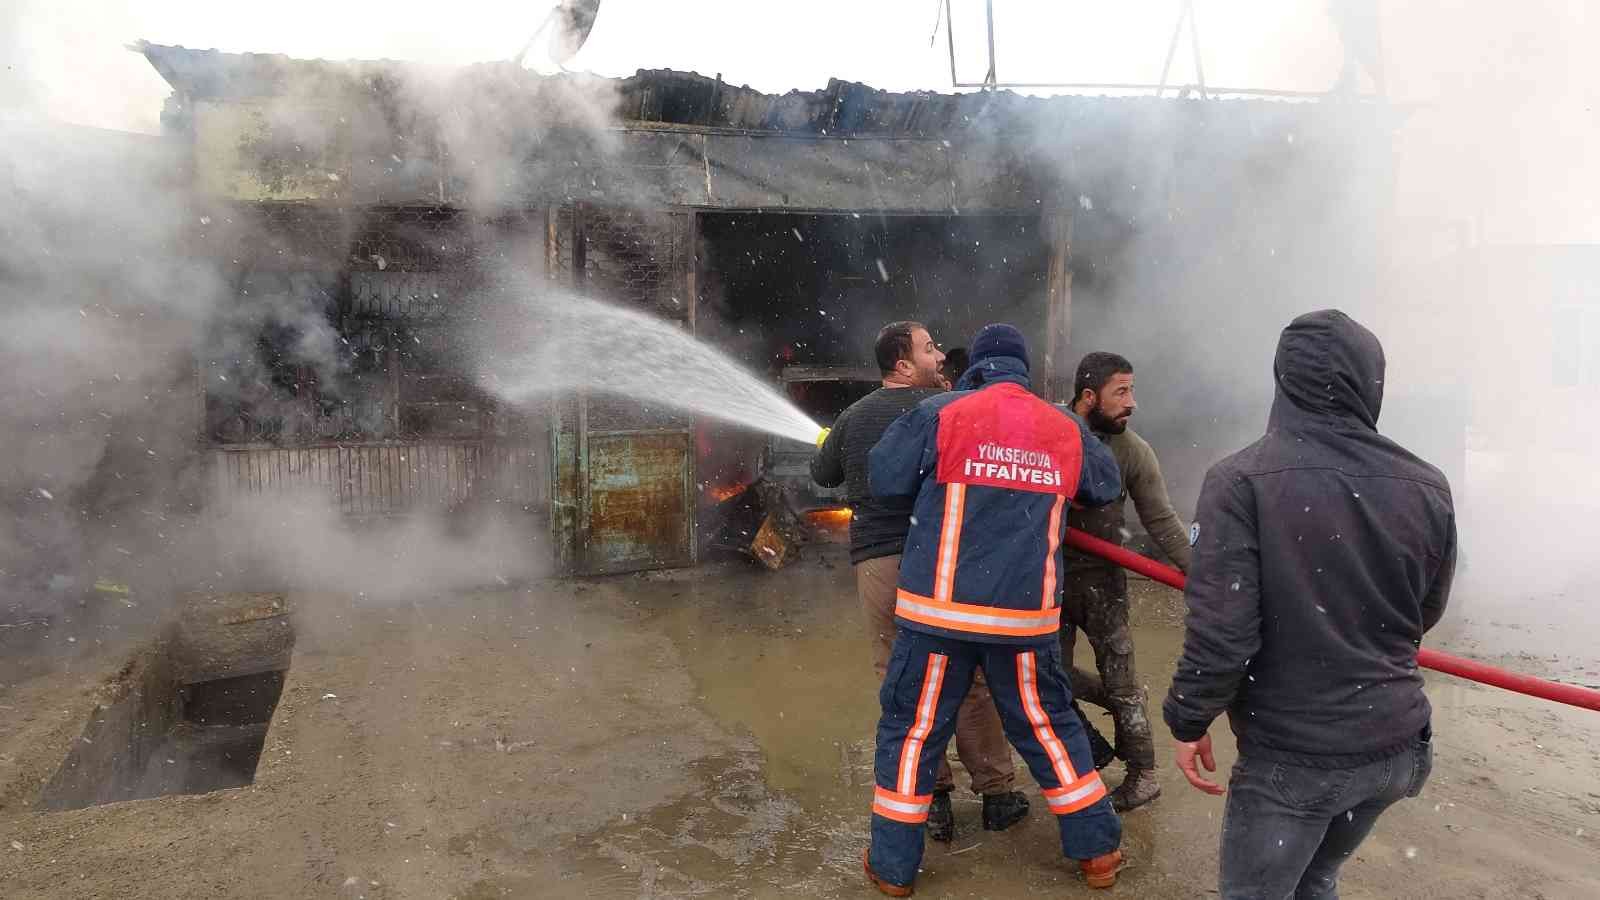 Yüksekova’da iş yerinde çıkan yangın maddi hasara yol açtı #hakkari